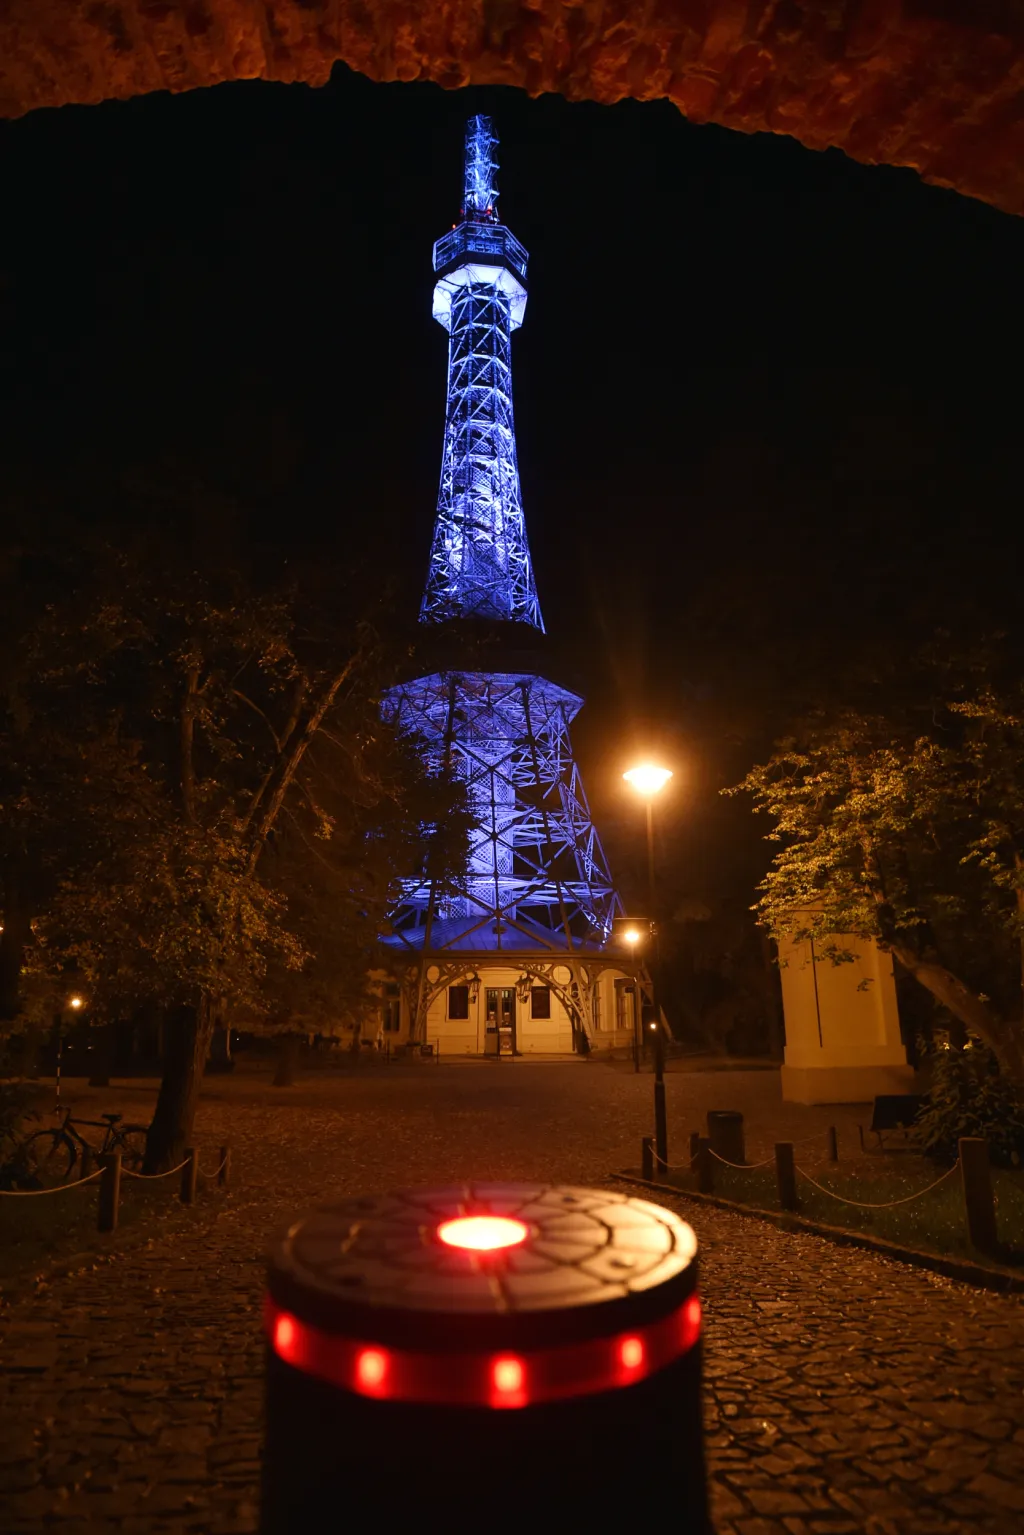 Modře osvětlené budovy symbolicky připomněly 75 let od vzniku Organizace spojených národů